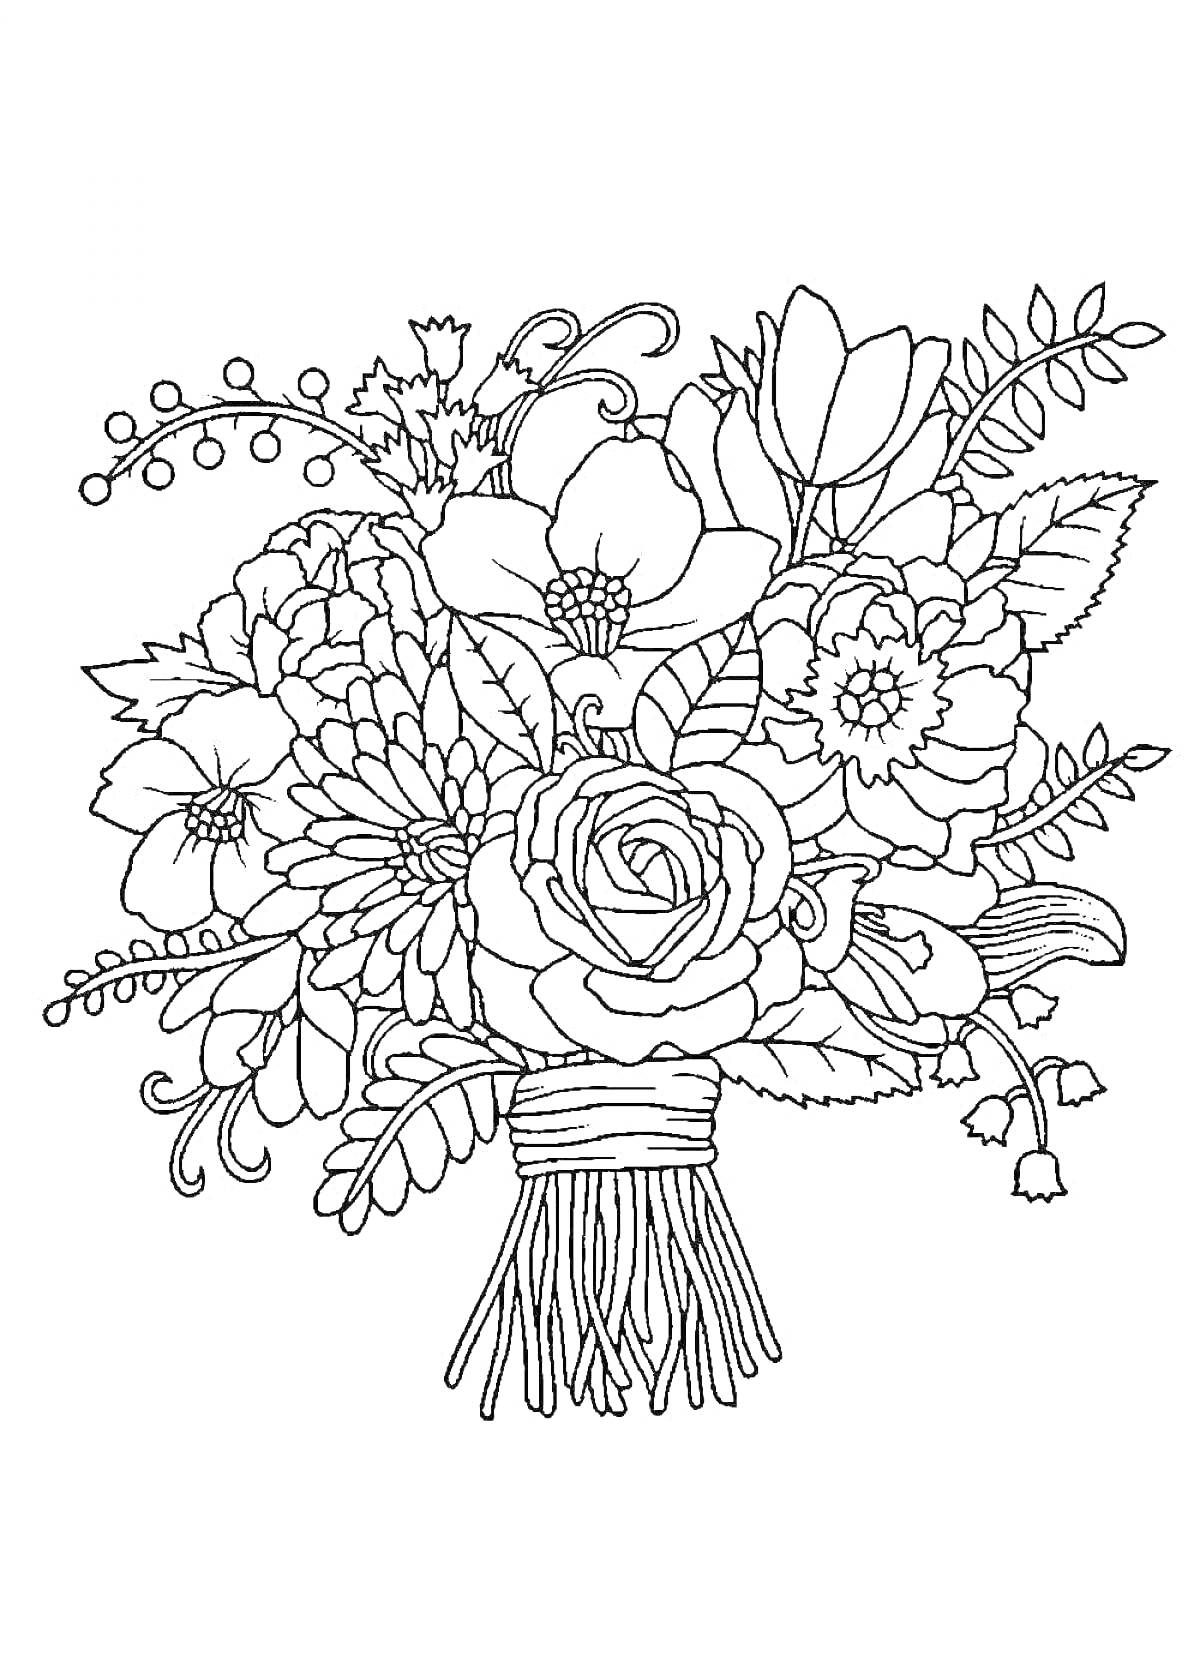 Букет с цветами, листьями и завязанными стеблями